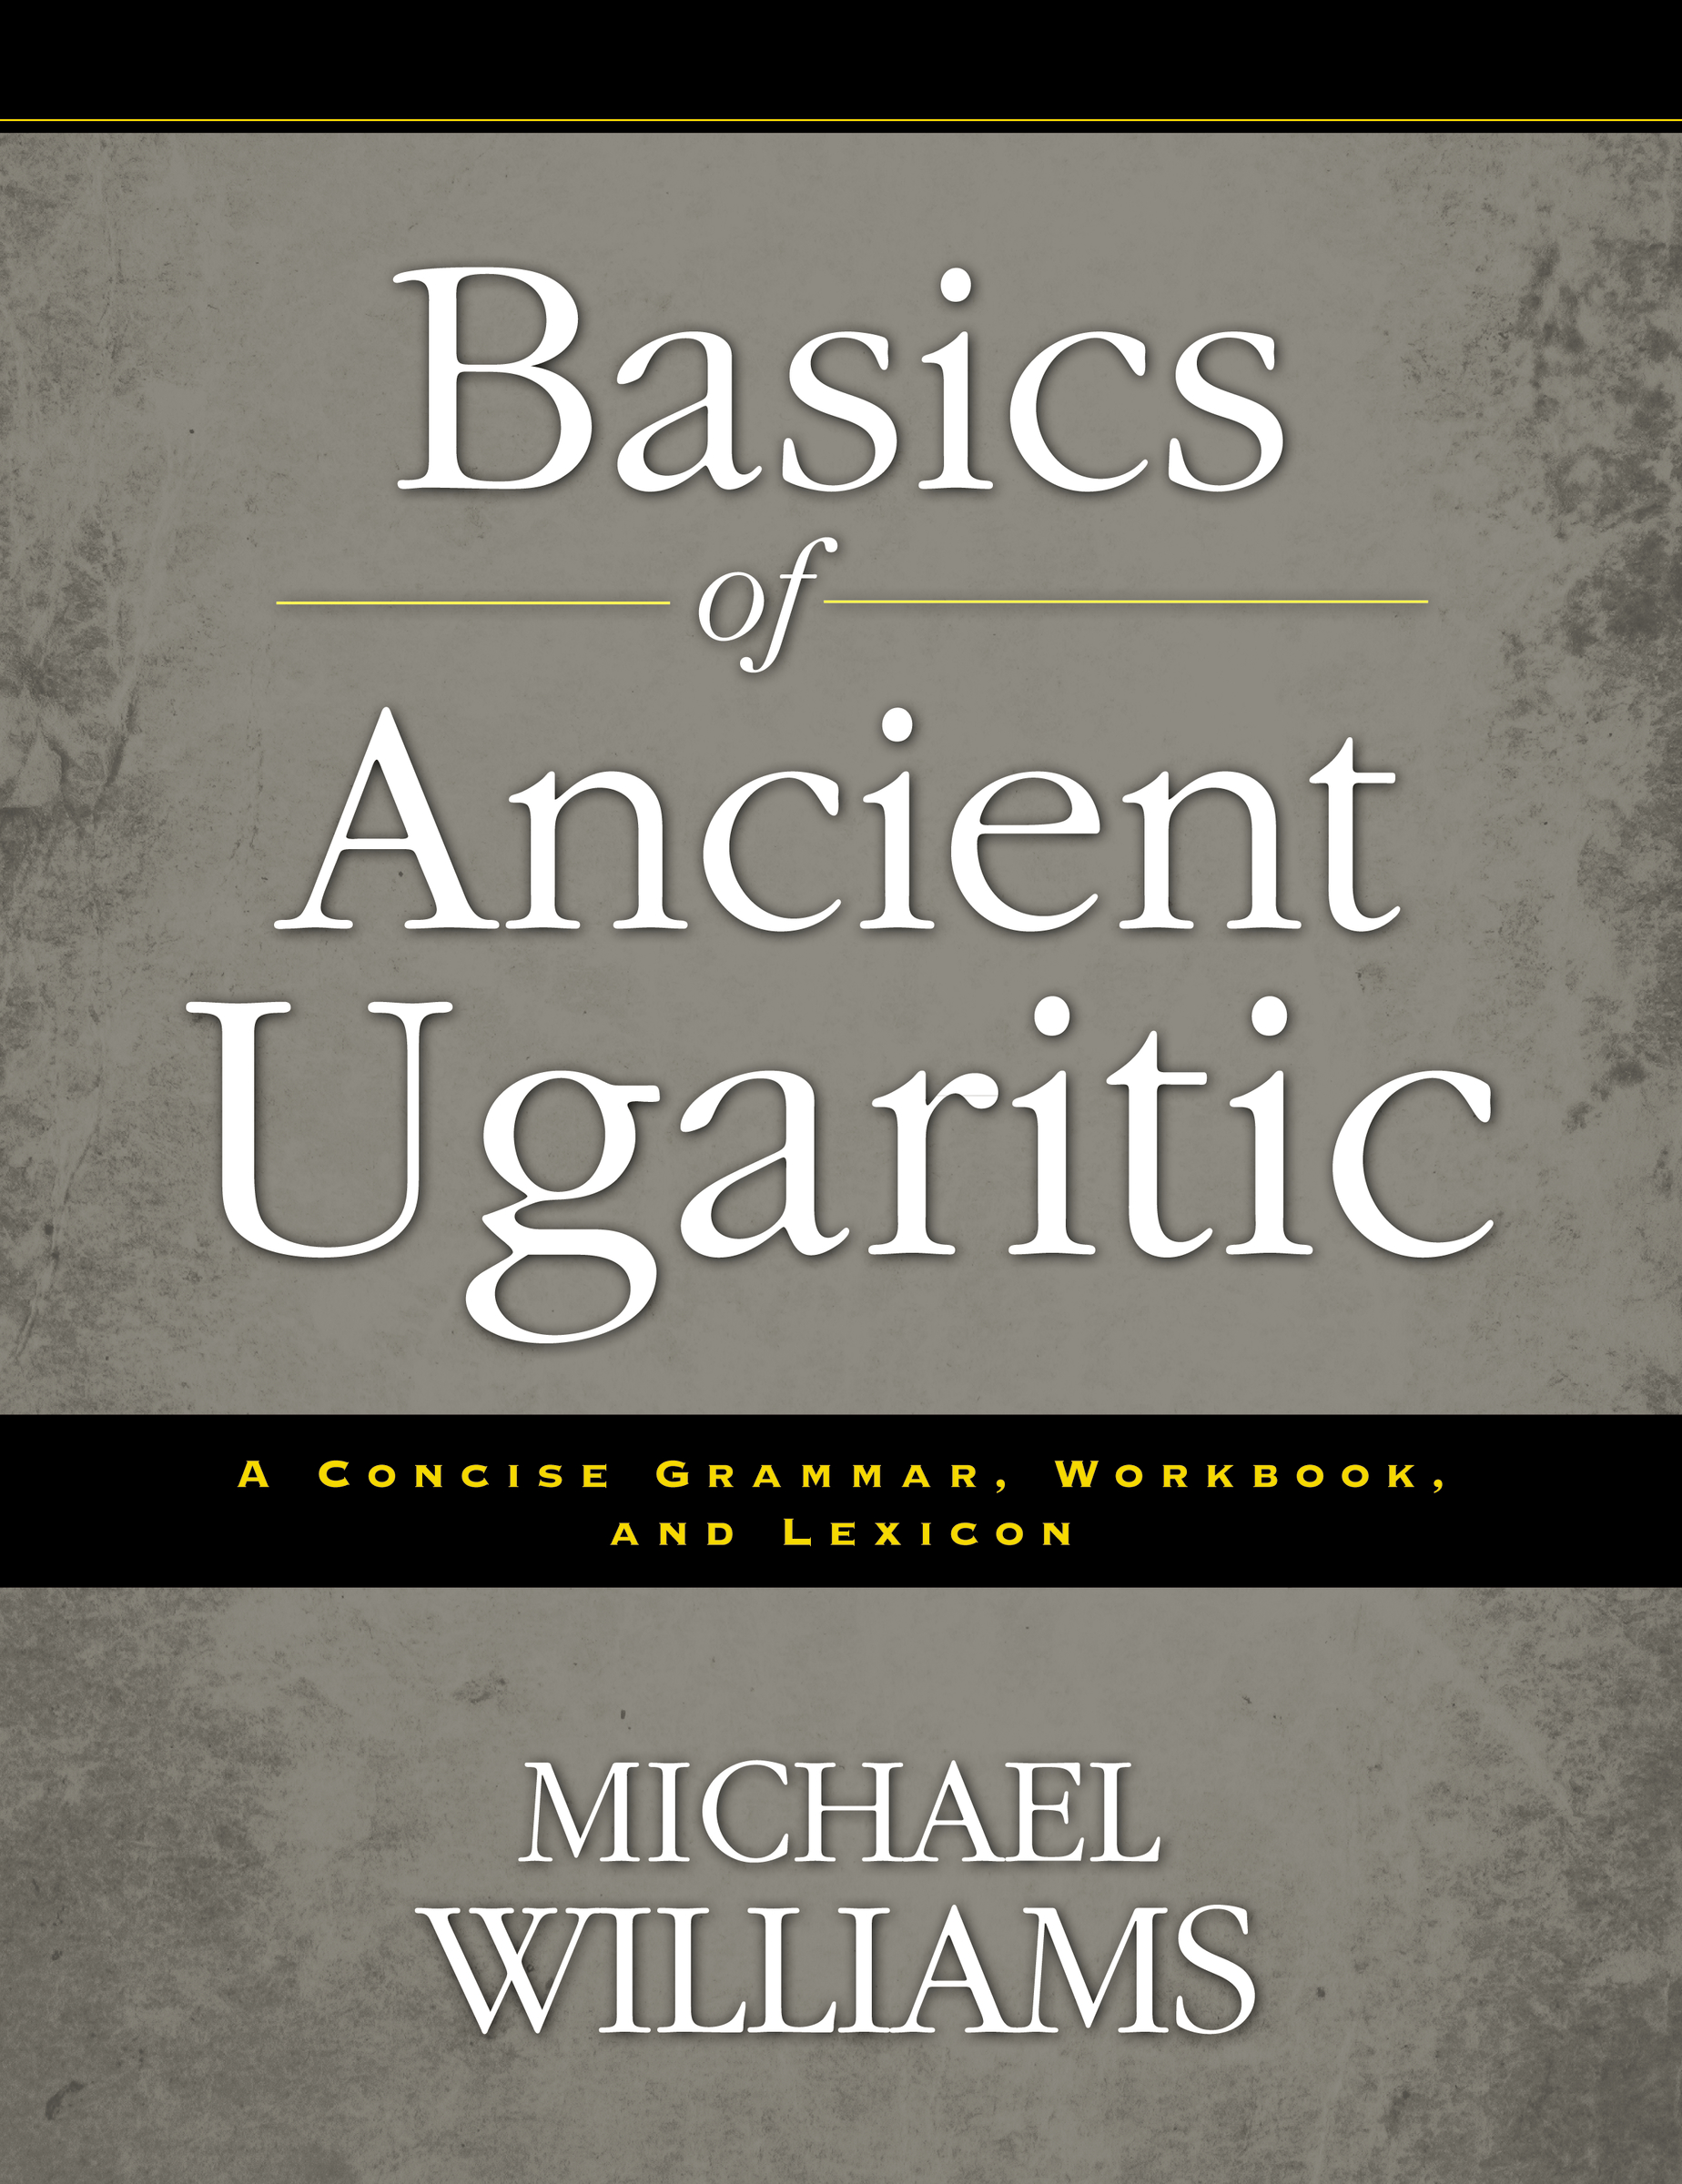 Basics of Ancient Ugaritic